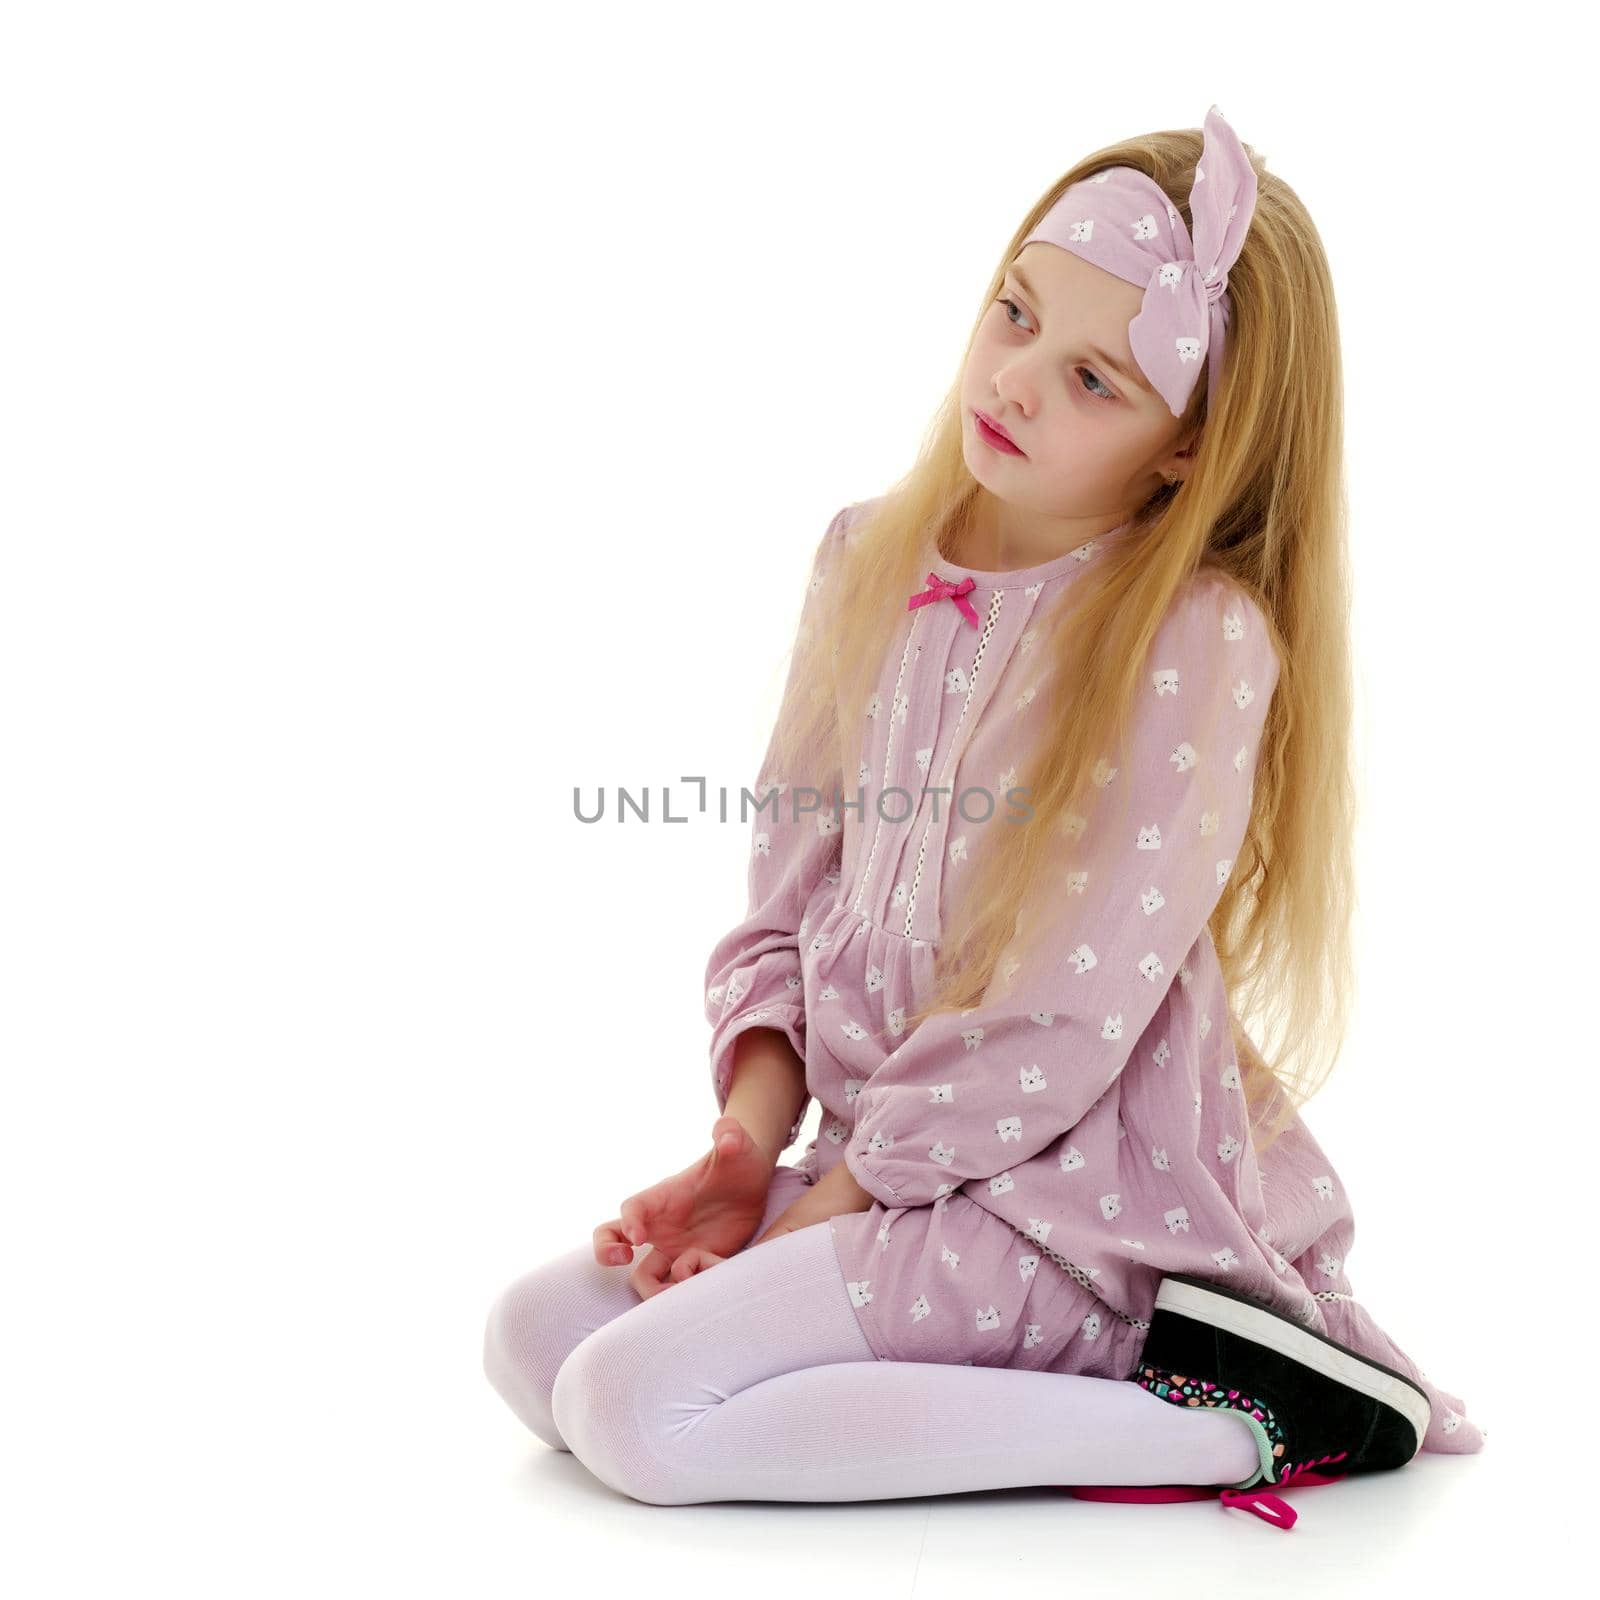 The little girl is on her knees. by kolesnikov_studio